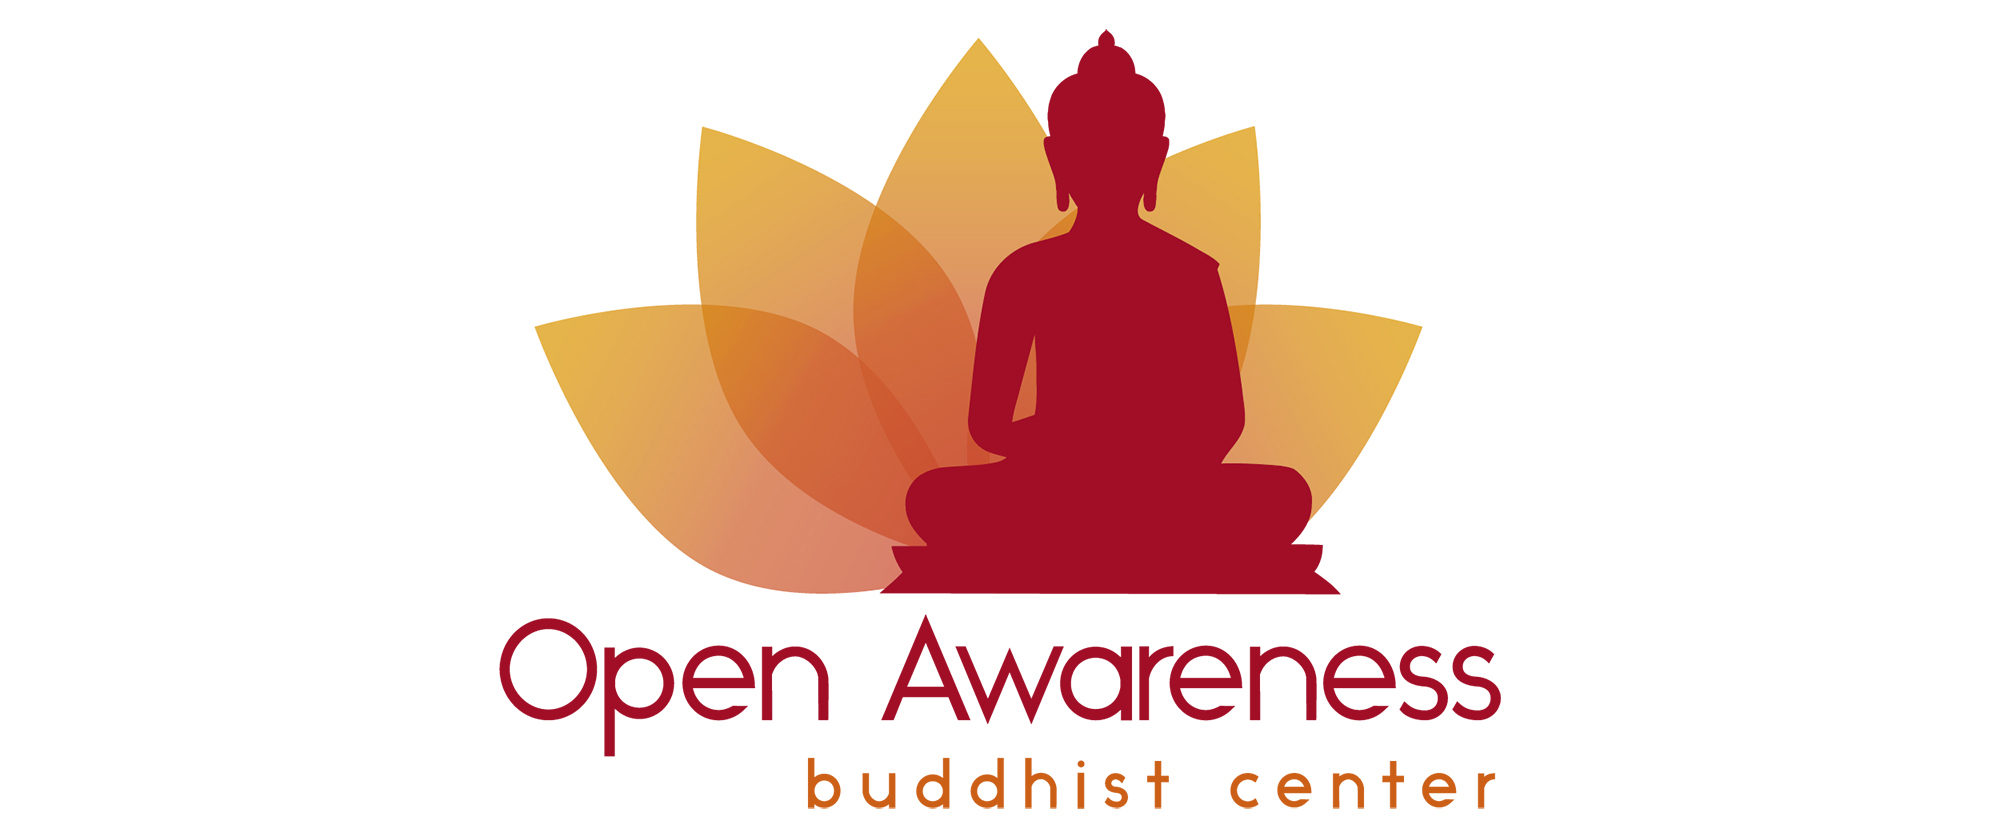 Open Awareness Buddhist Center Featured Wide